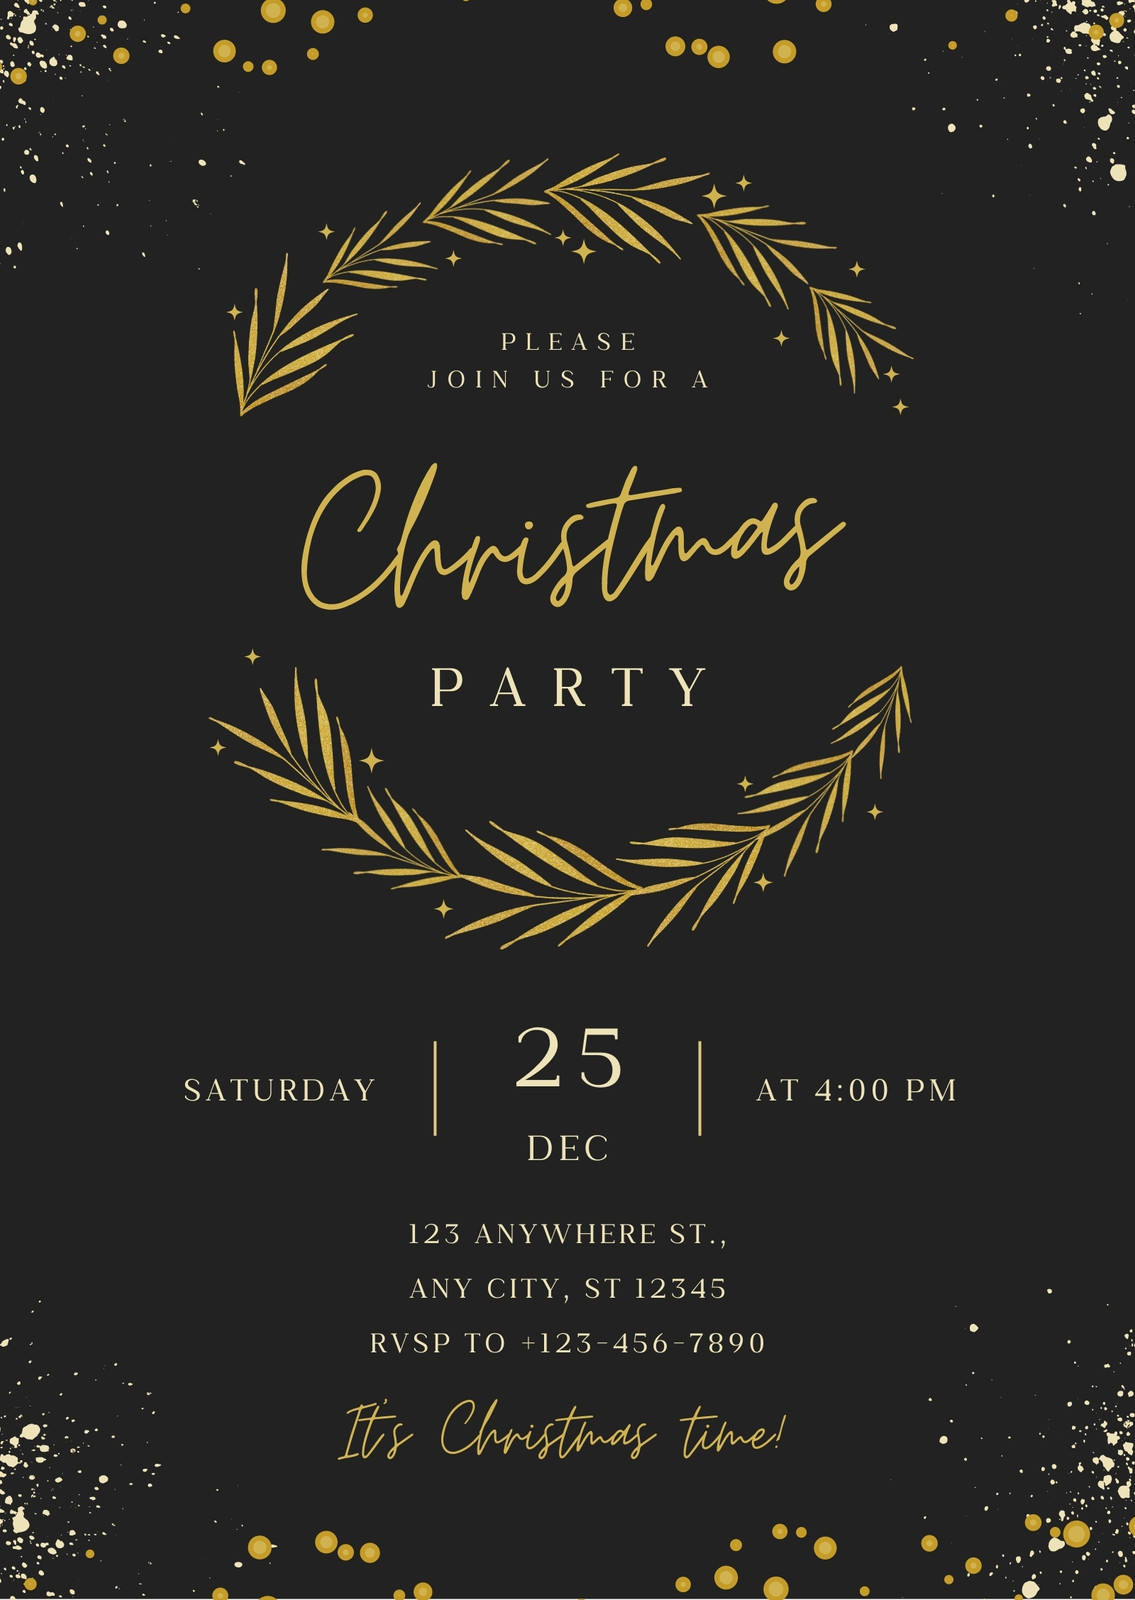 Black Gold Black Corporate Party Event Invitation